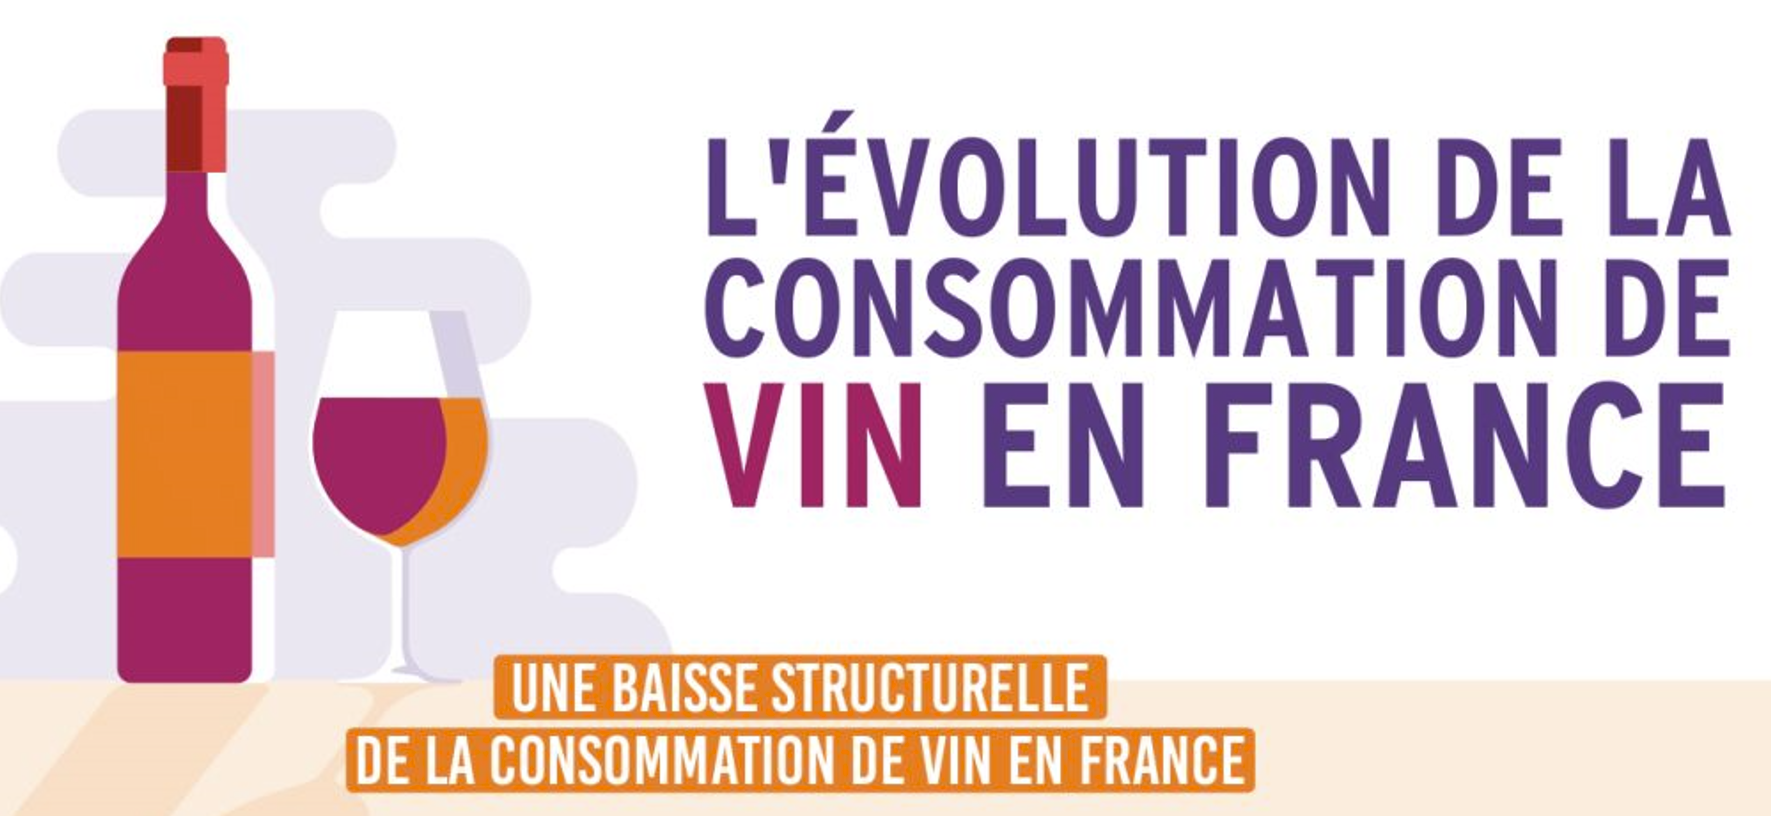 L'évolution de la consommation de vin en France